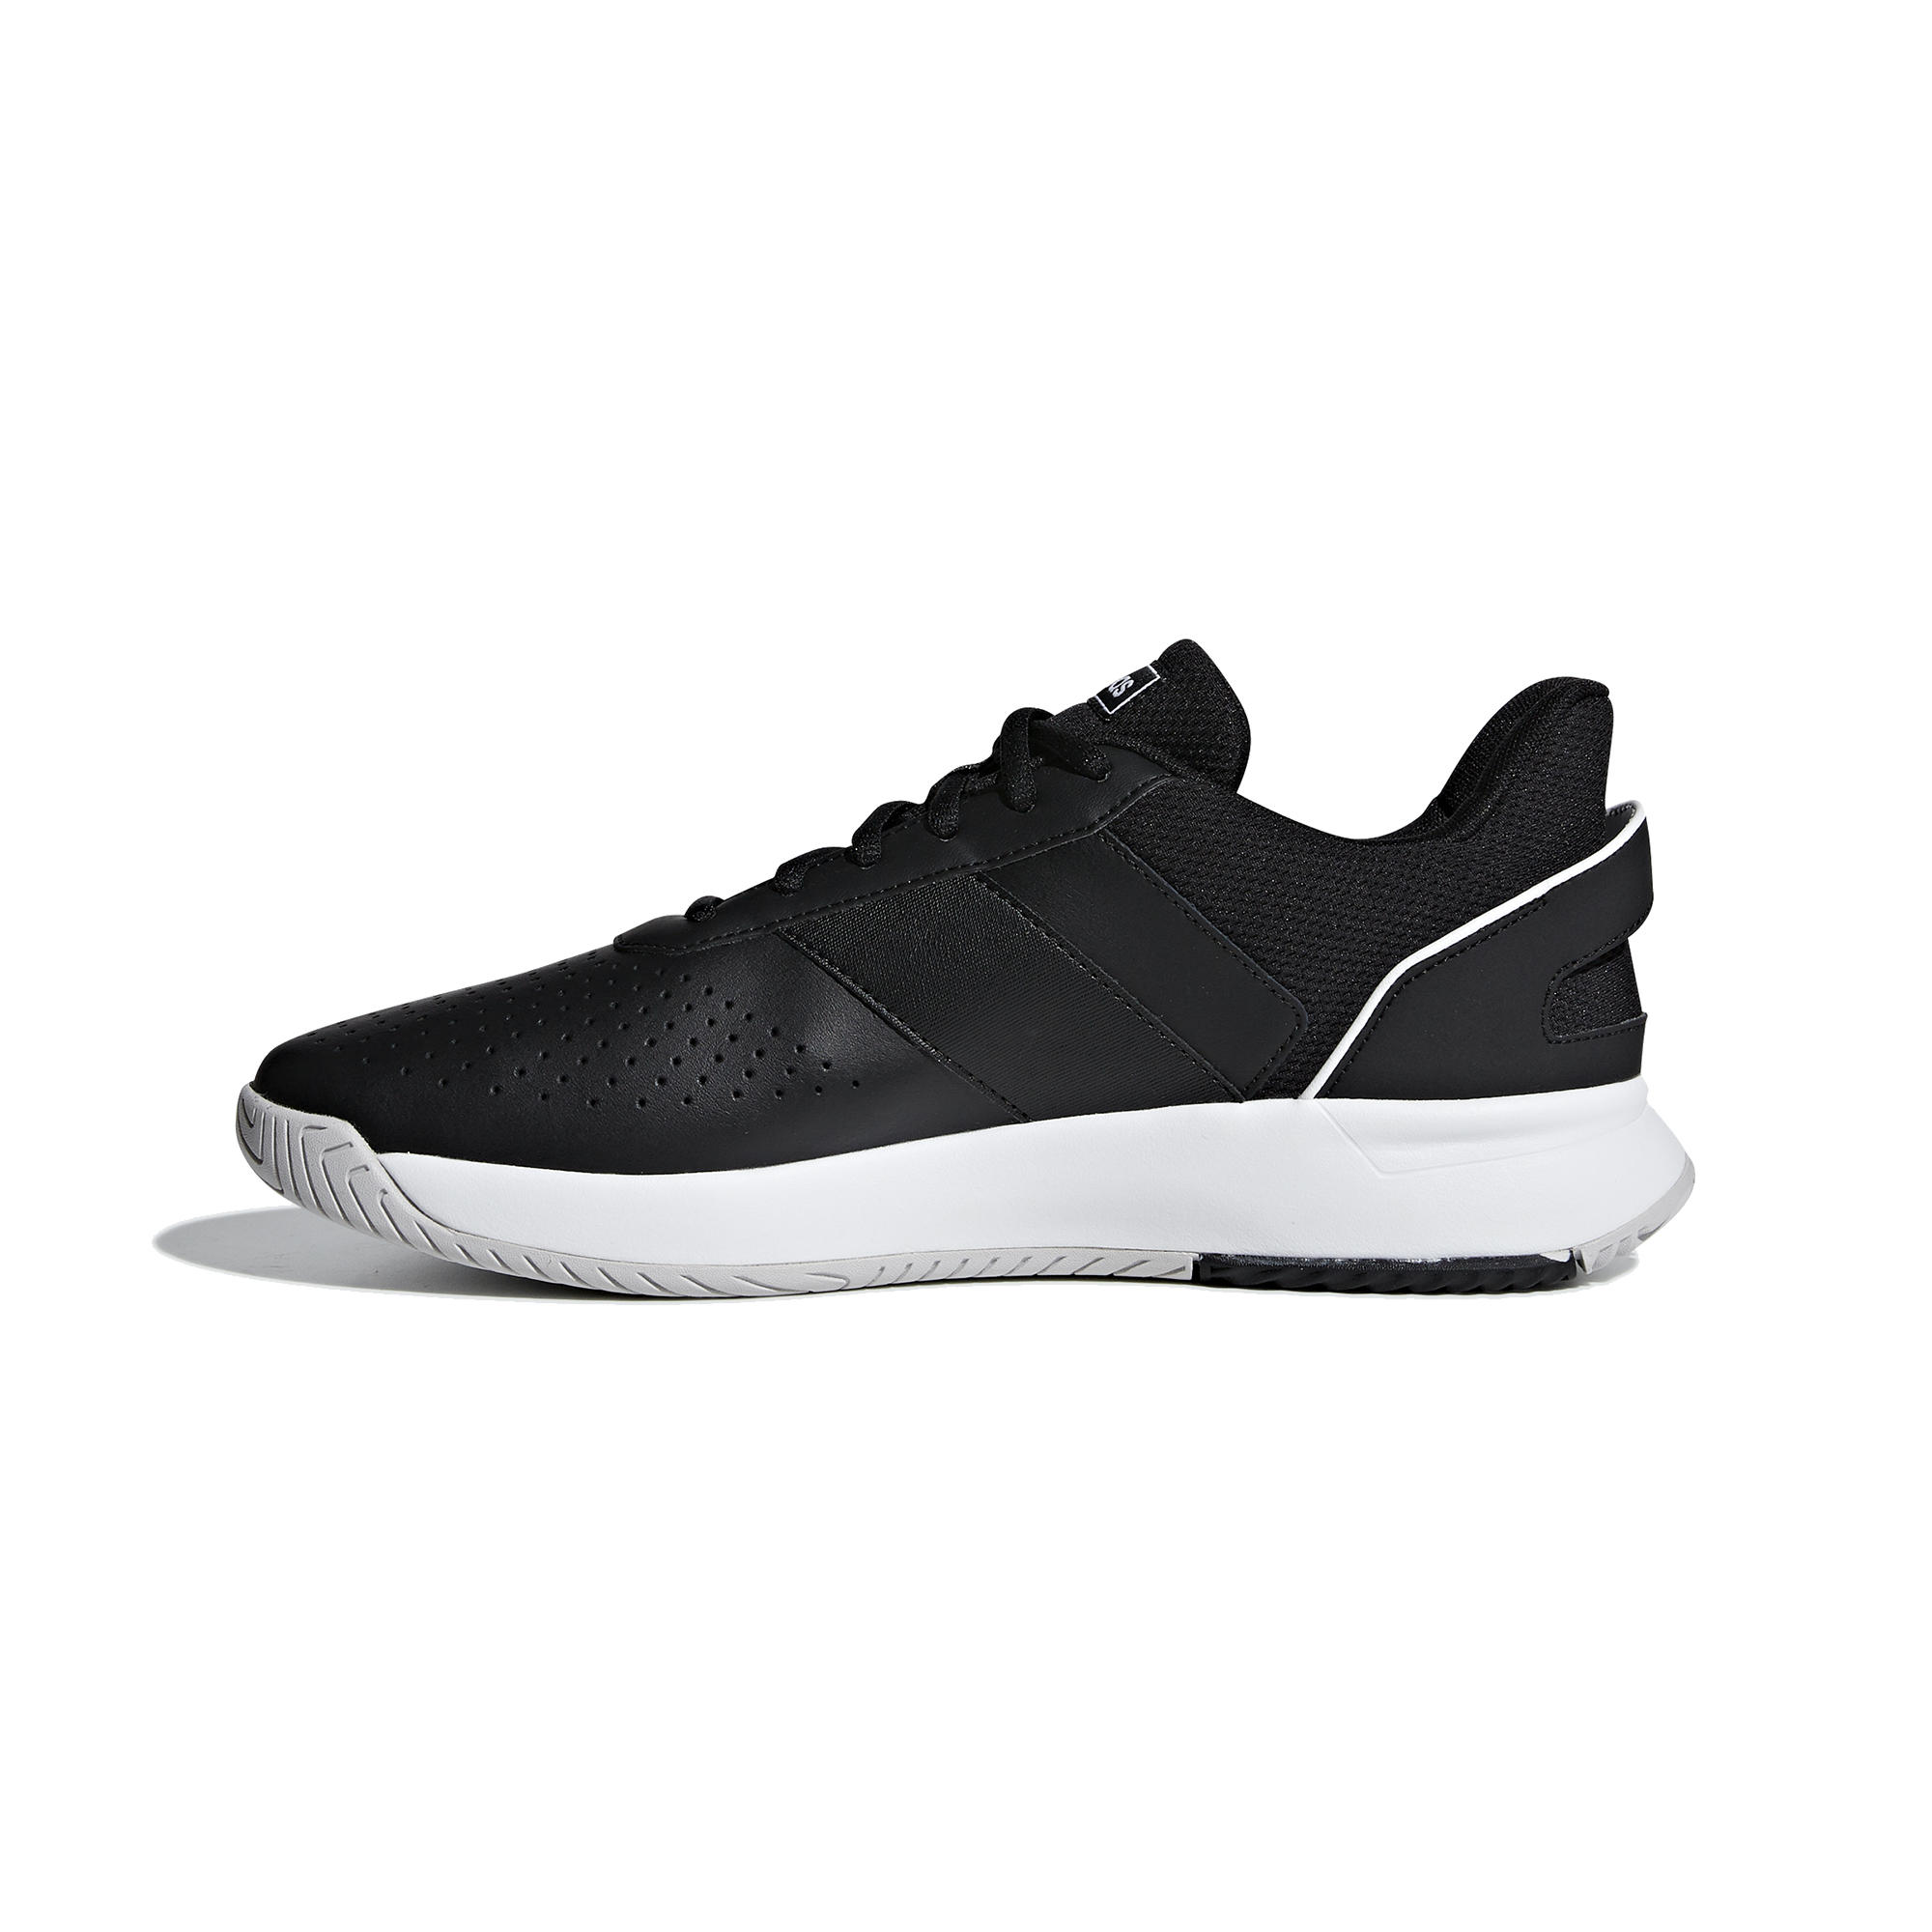 Men's Tennis Shoes Courtsmash - Black 3/9